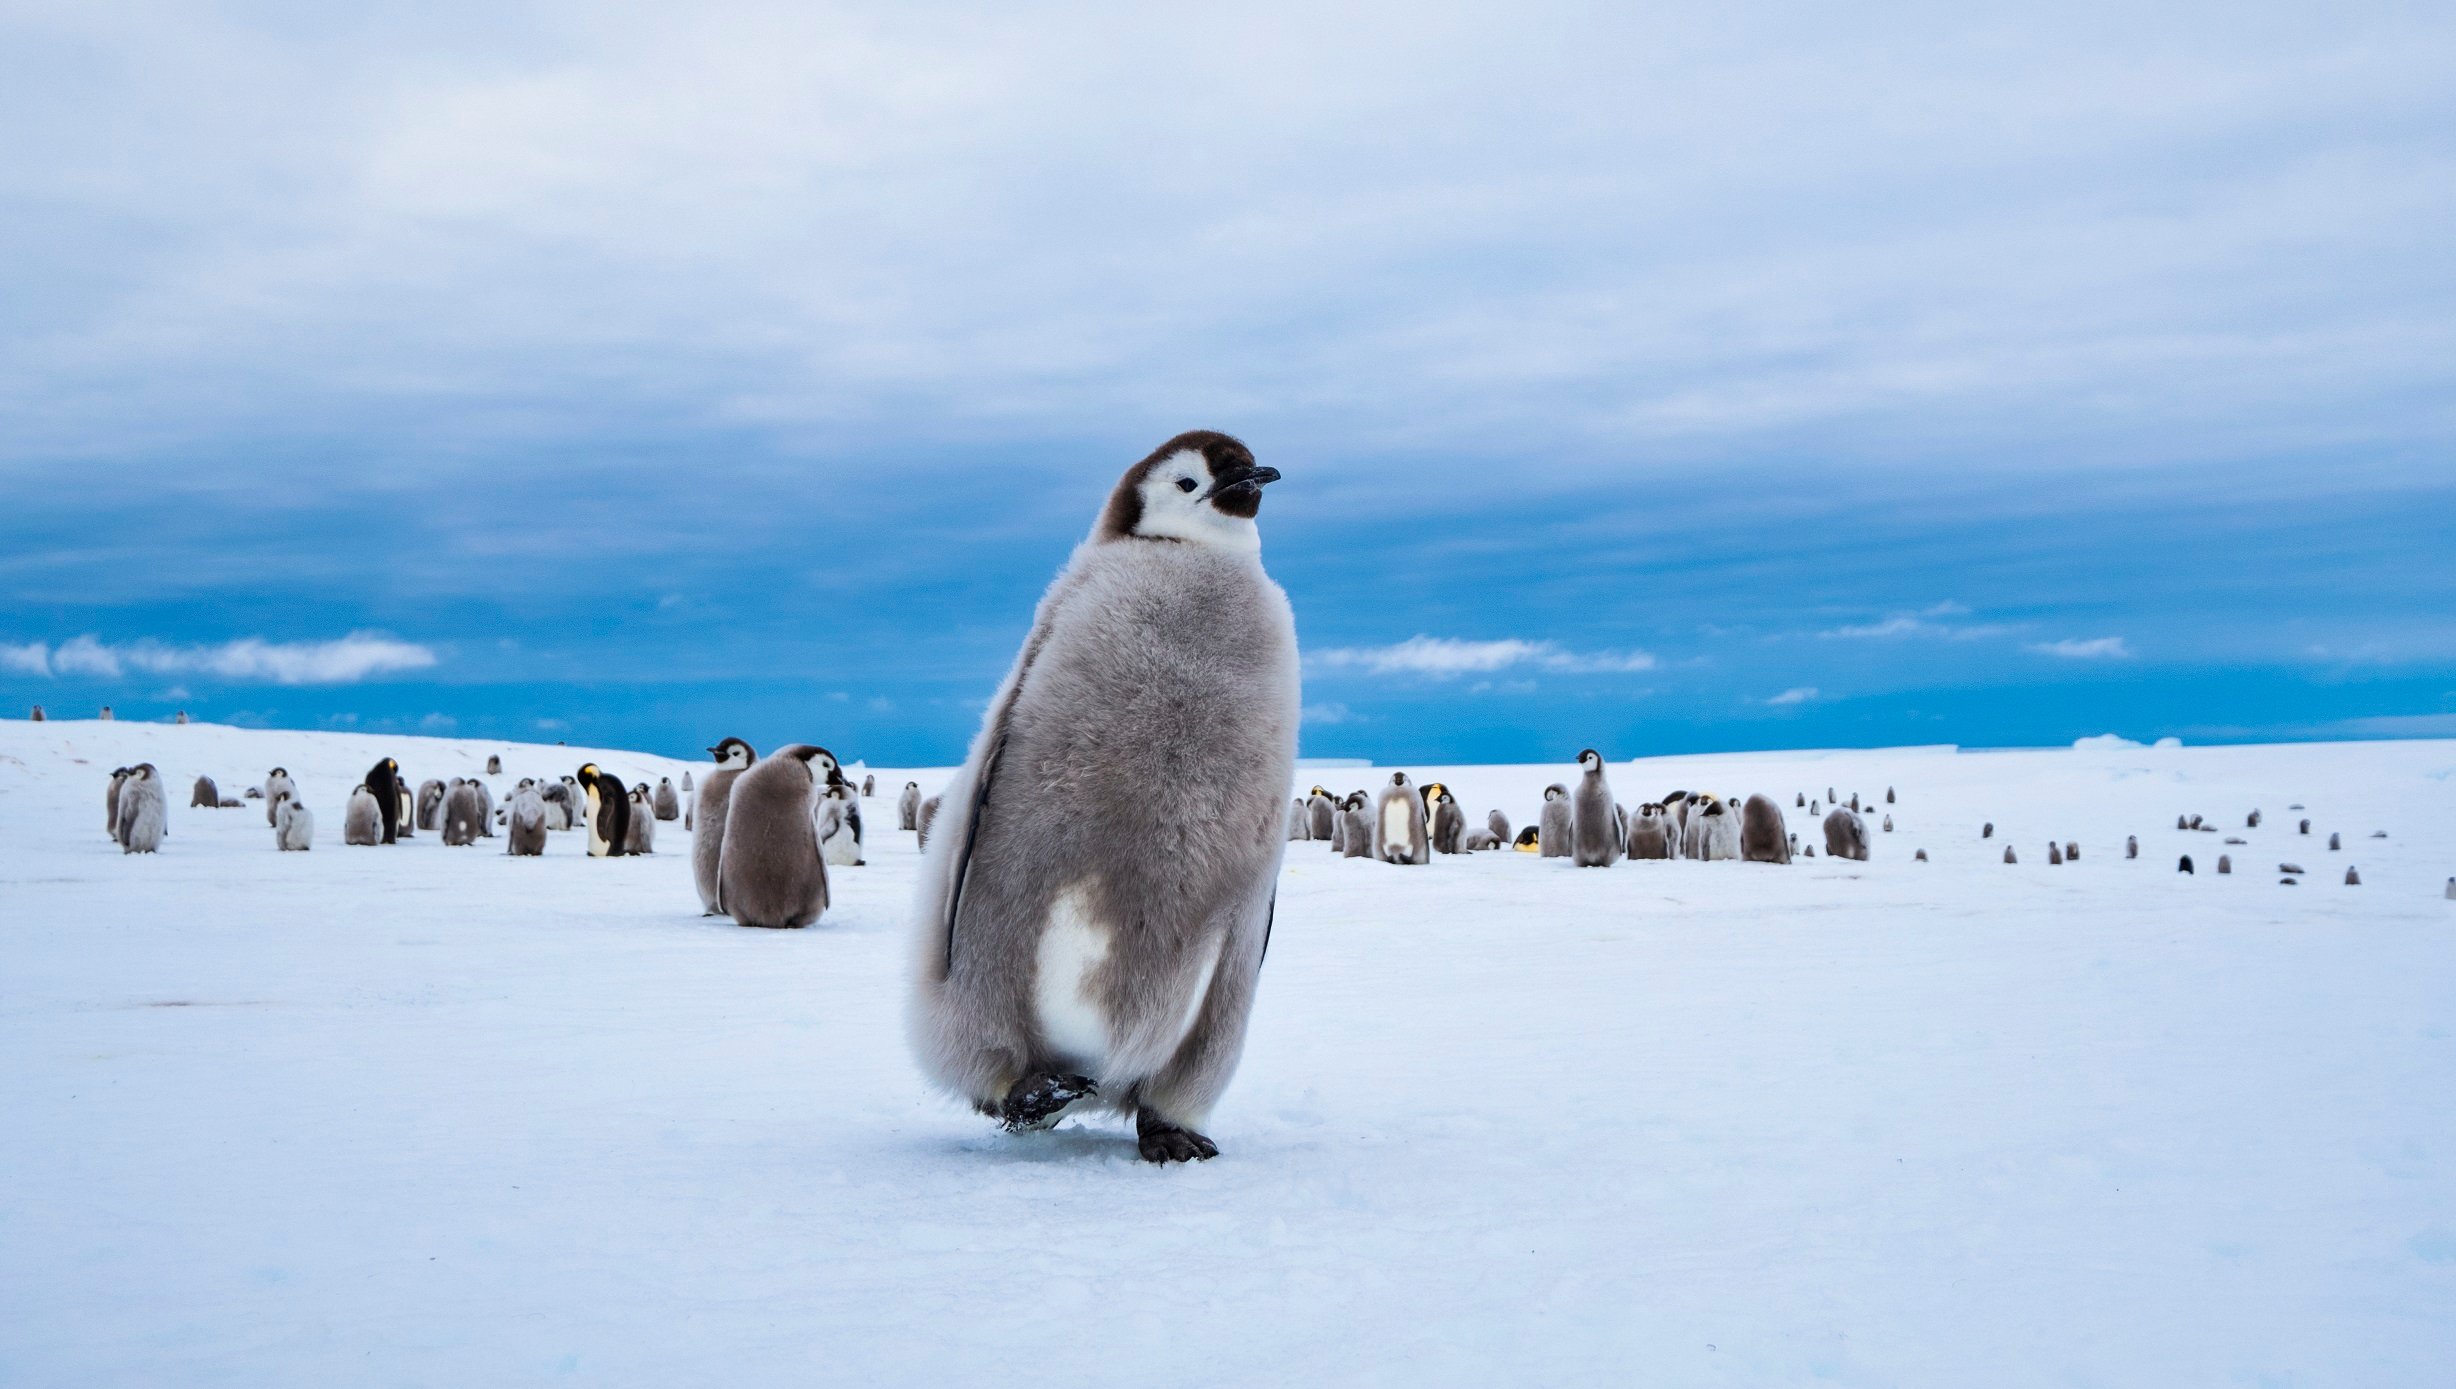 Pinguin Antarctica